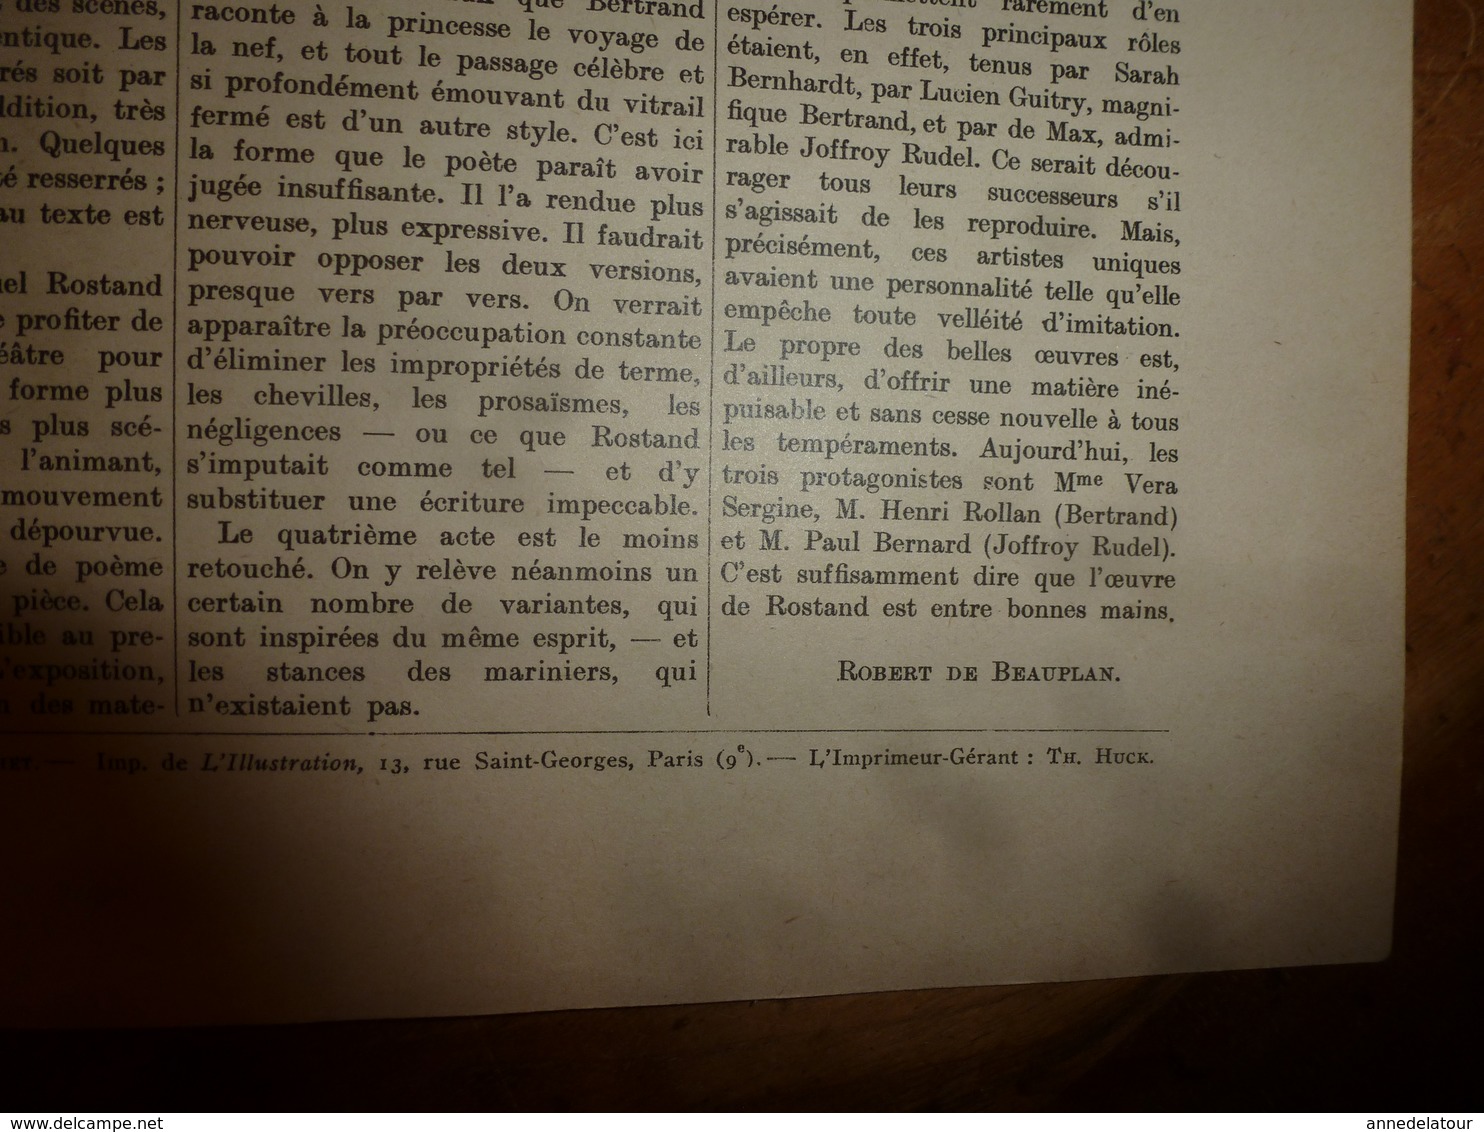 1929 LA PRINCESSE LOINTAINE ,piece en 4 actes en vers d'Edmond Rostand - Décors et costume par Erté